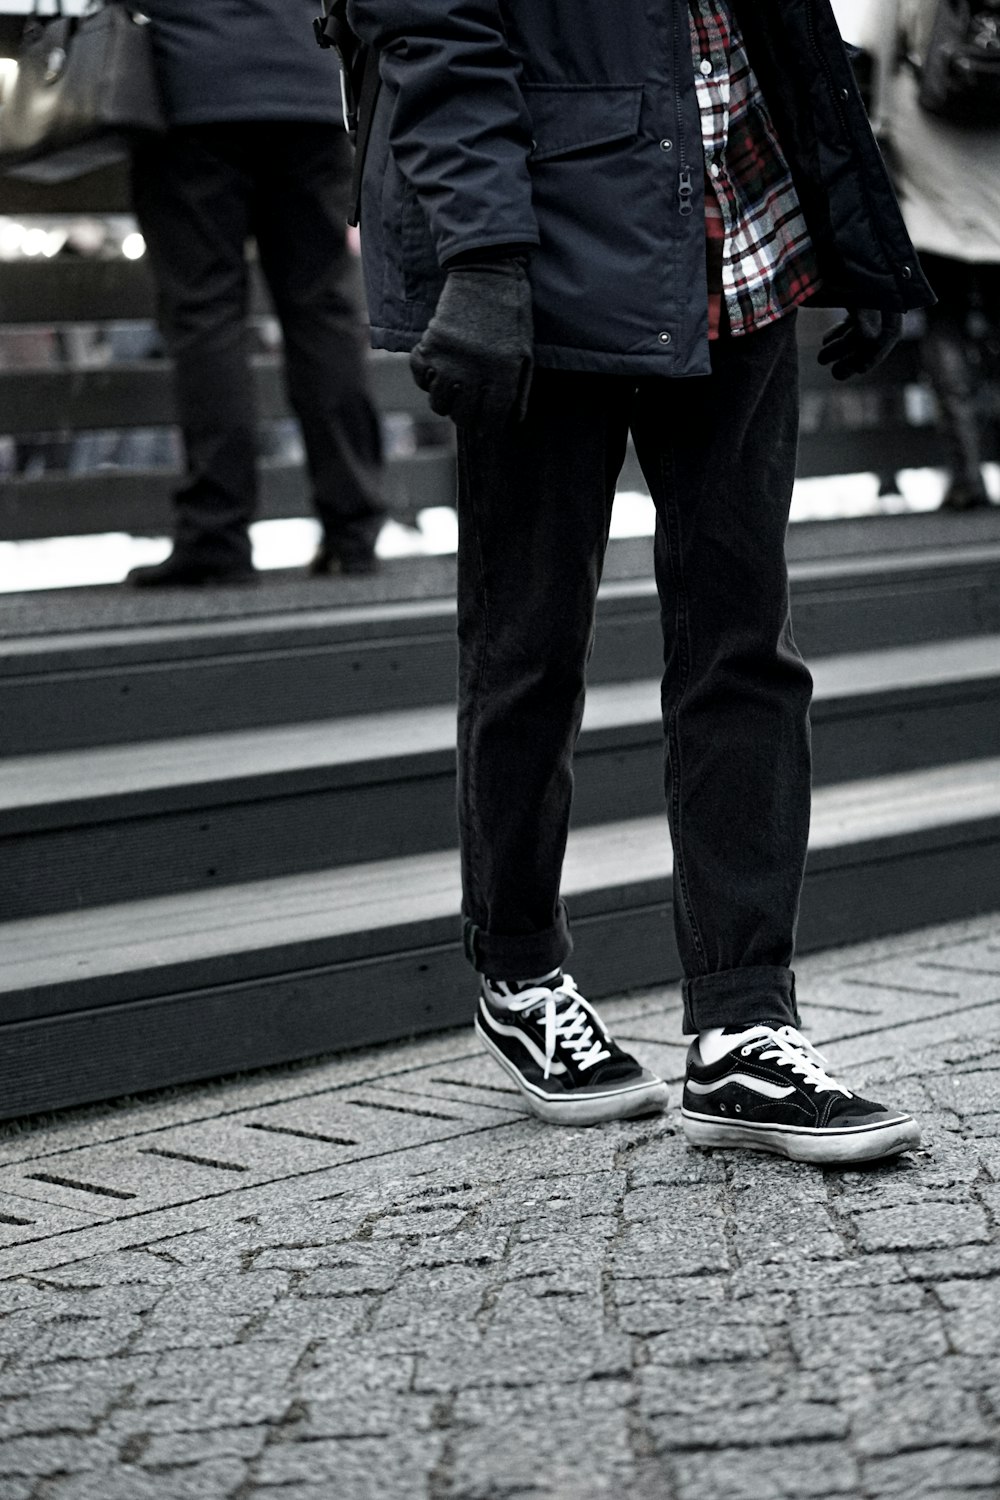 man wearing black Vans sneakers photo – Free Apparel Image on Unsplash